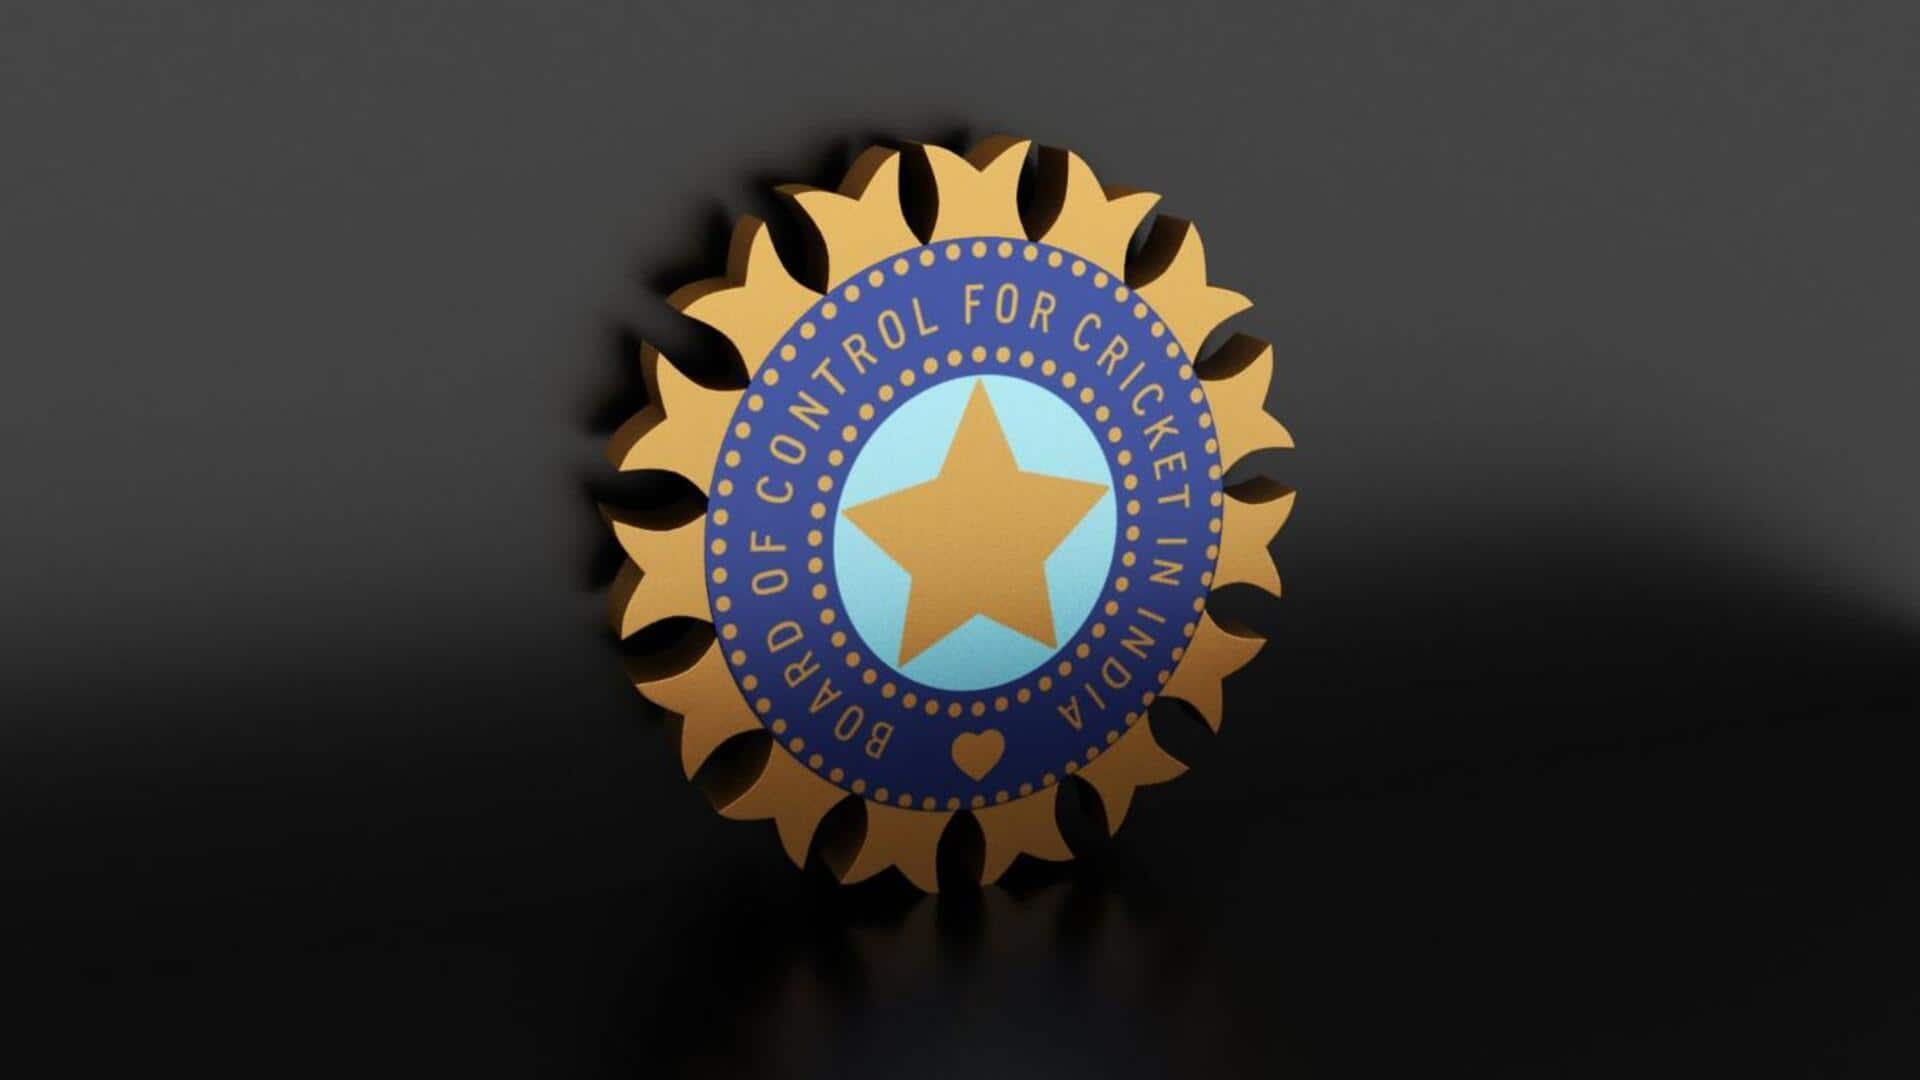 BCCI ने महिला चयन समिति और जूनियर क्रिकेट समिति की नियुक्तियों की घोषणा की